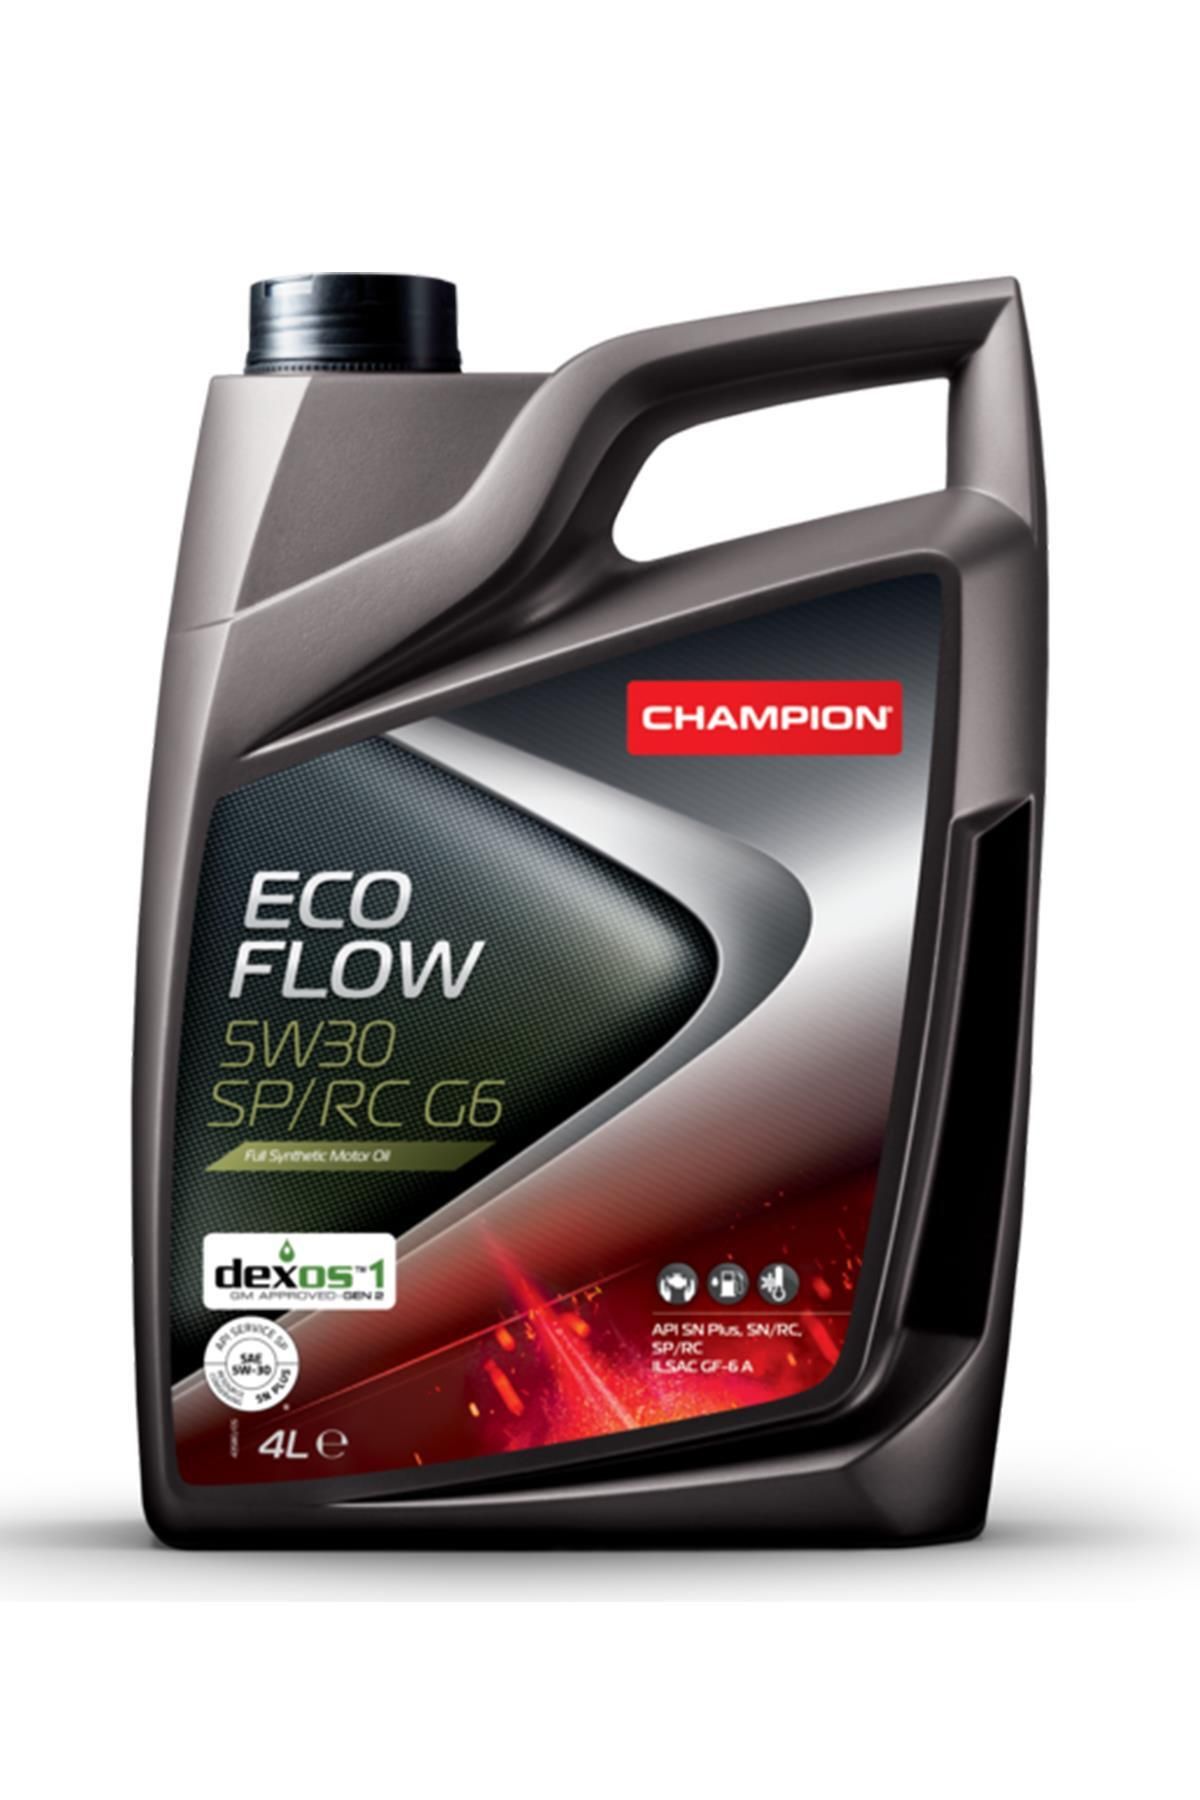 Champion Eco Flow 5w30 Sp/rc G6 Motor Yağı 4l.